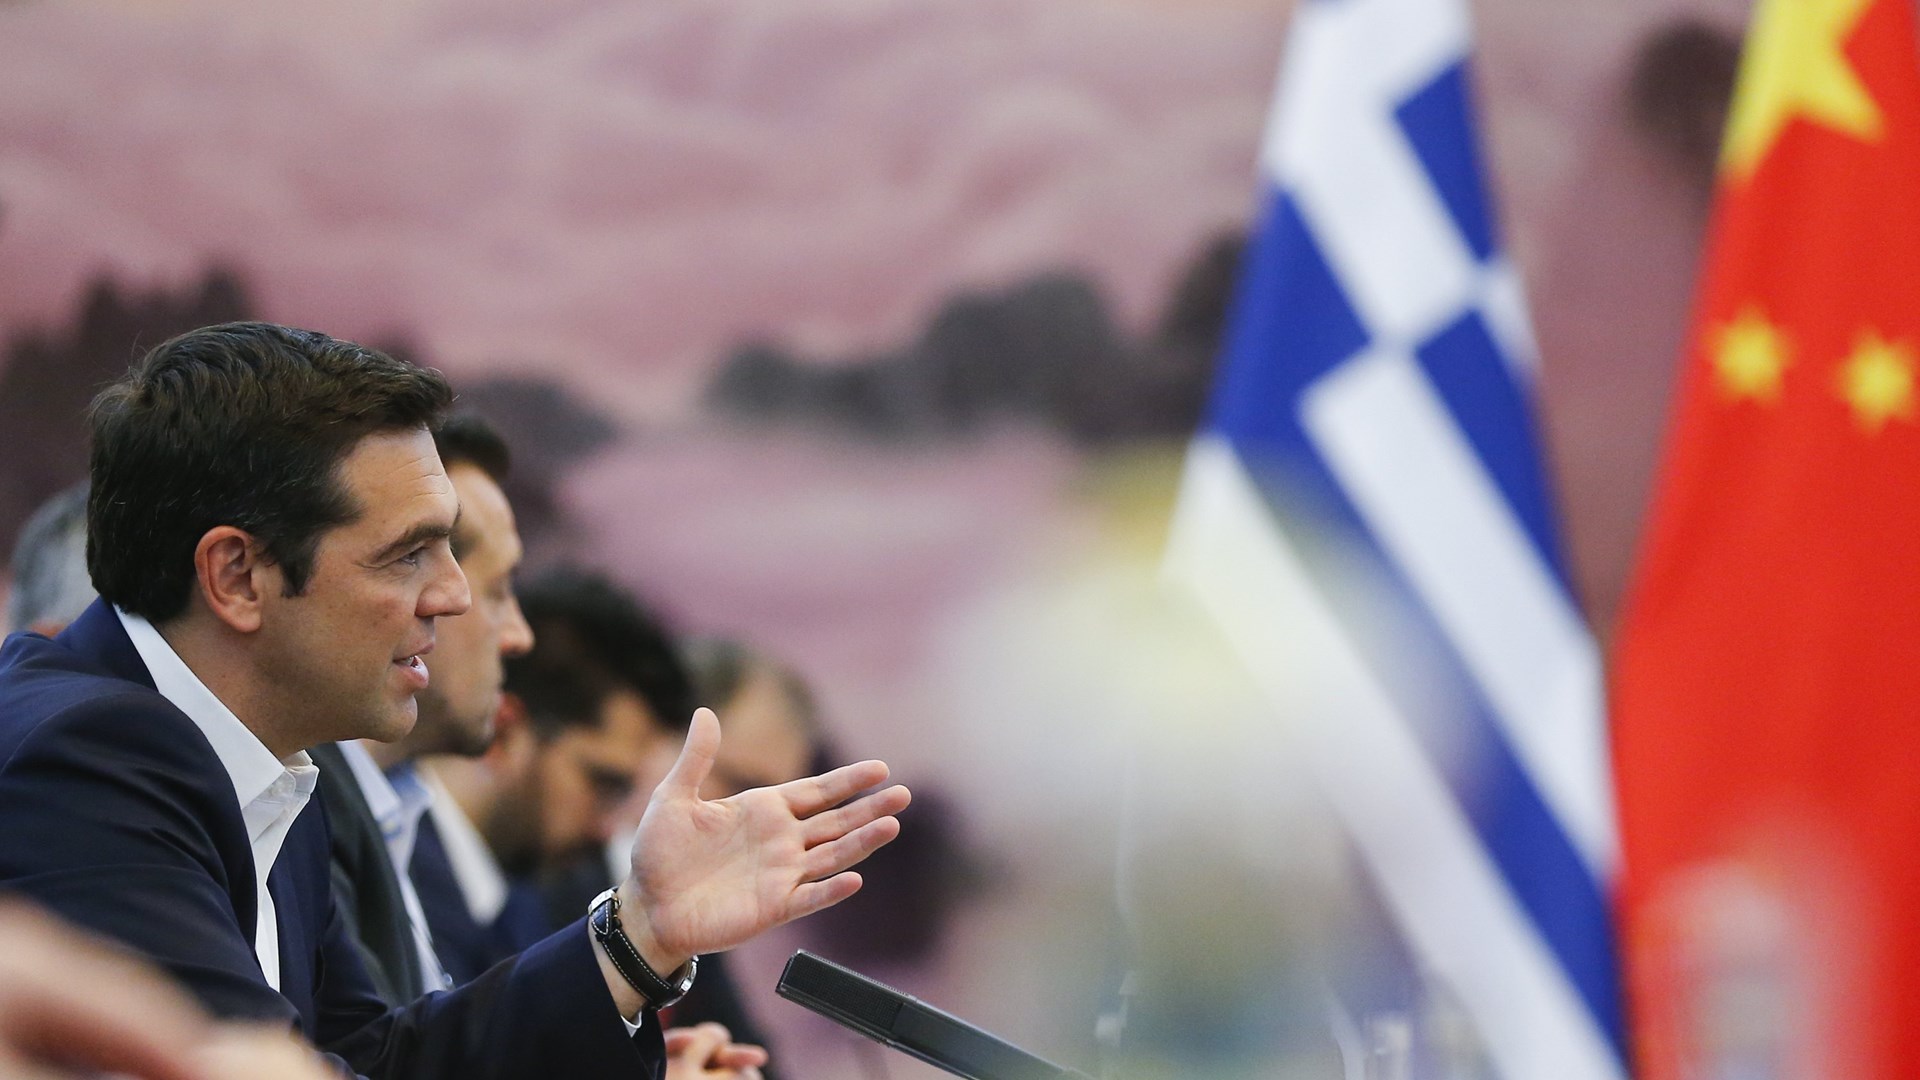 Τσίπρας: Η Ελλάδα επιστρέφει στον δρόμο της ανάπτυξης μετά από χρόνια σοβαρής κρίσης